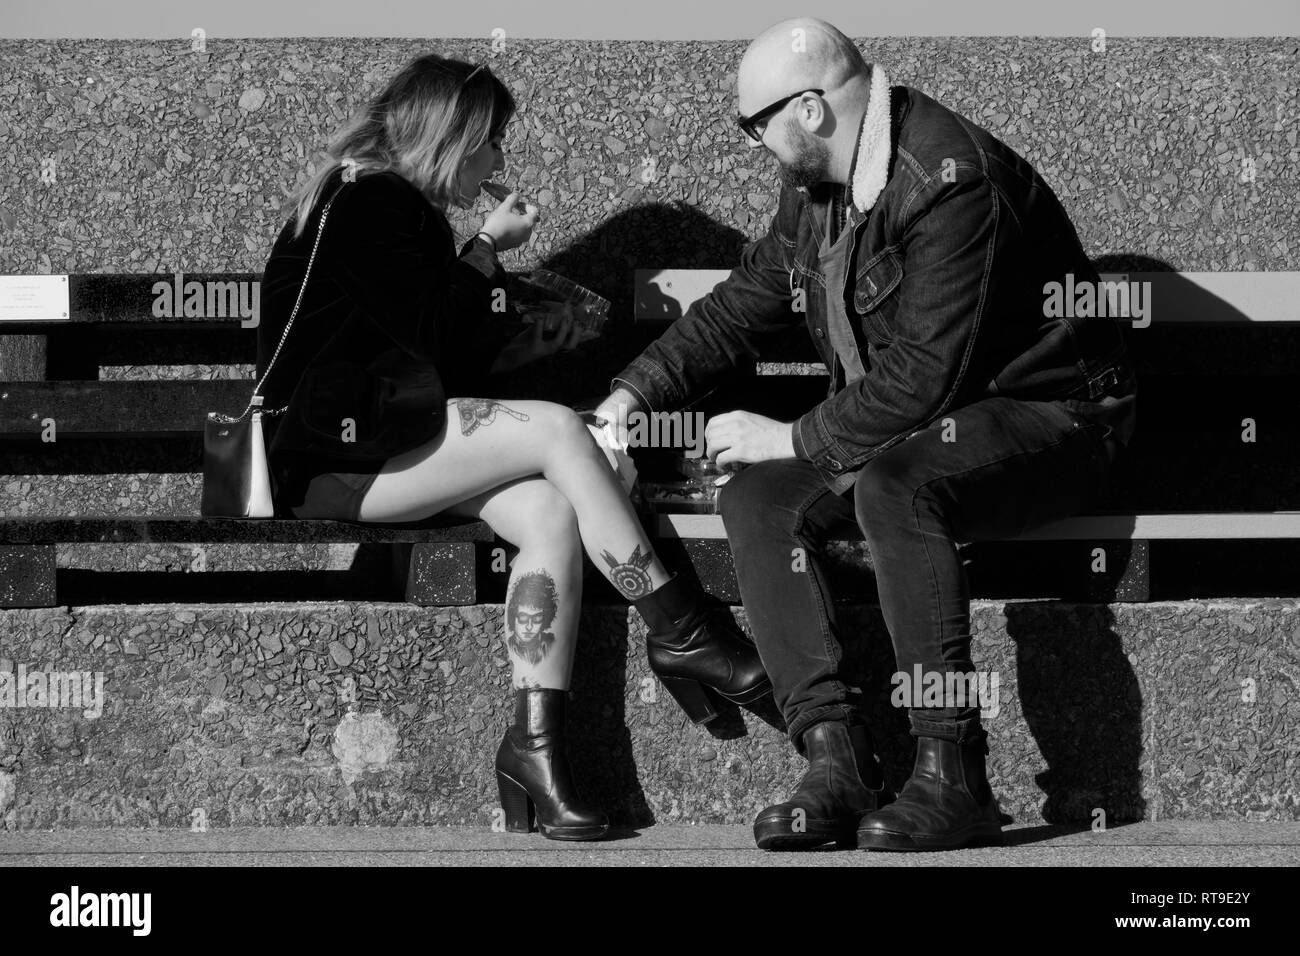 Schwarzweiß-Bild einer jungen Frau mit tätowierten Beinen auf einer Bank sitzen Essen mit einem männlichen Begleiter. Stockfoto